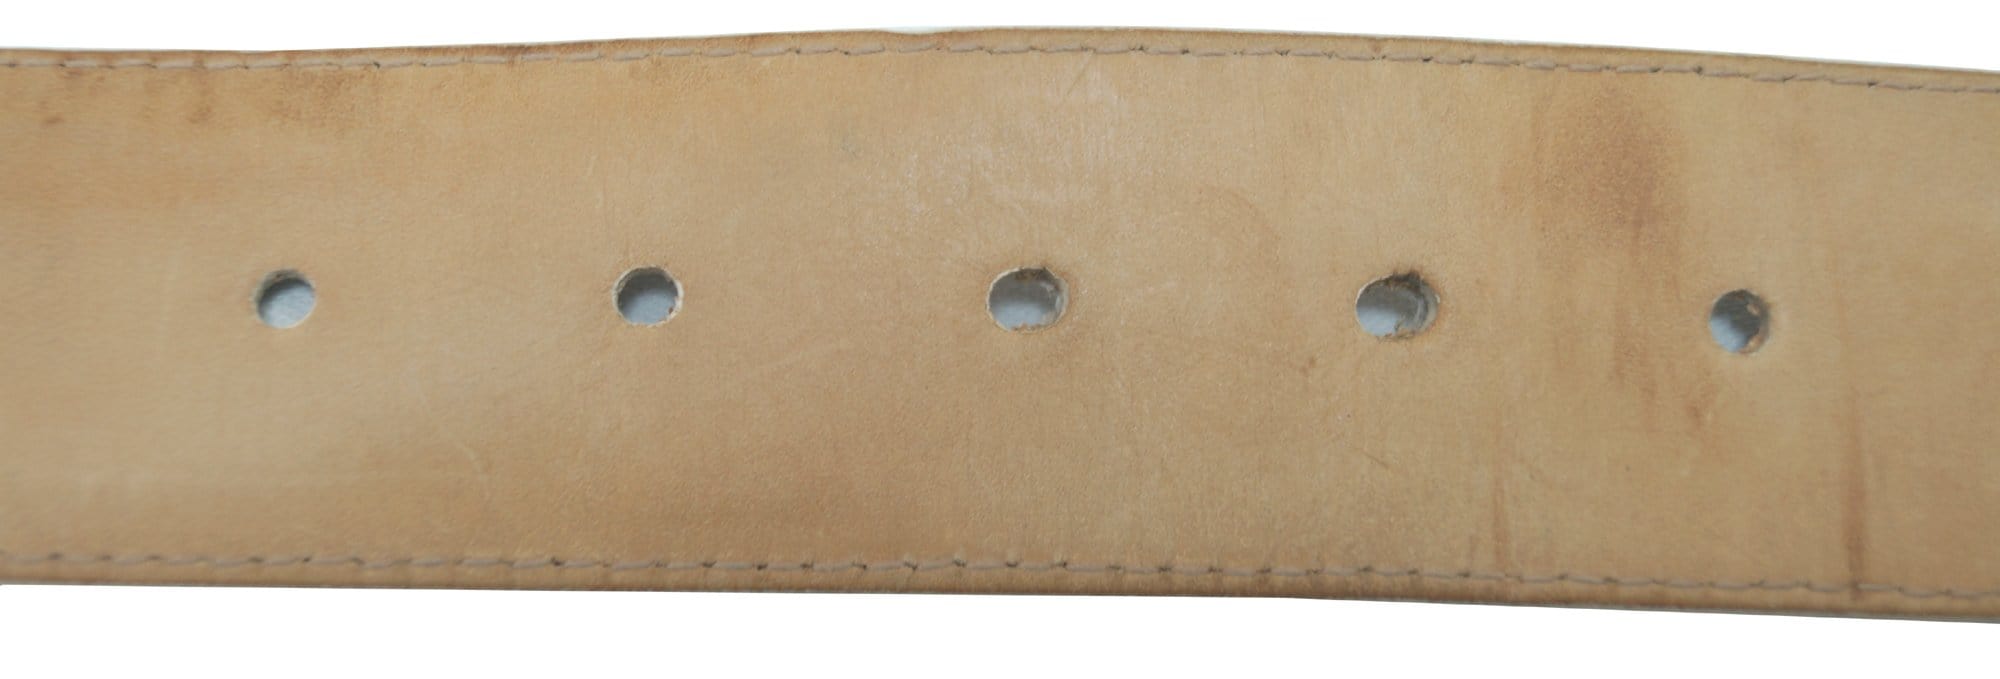 Authentic Louis Vuitton Damier Azur Canvas Leather Voyage Belt Size 80/32  M9837